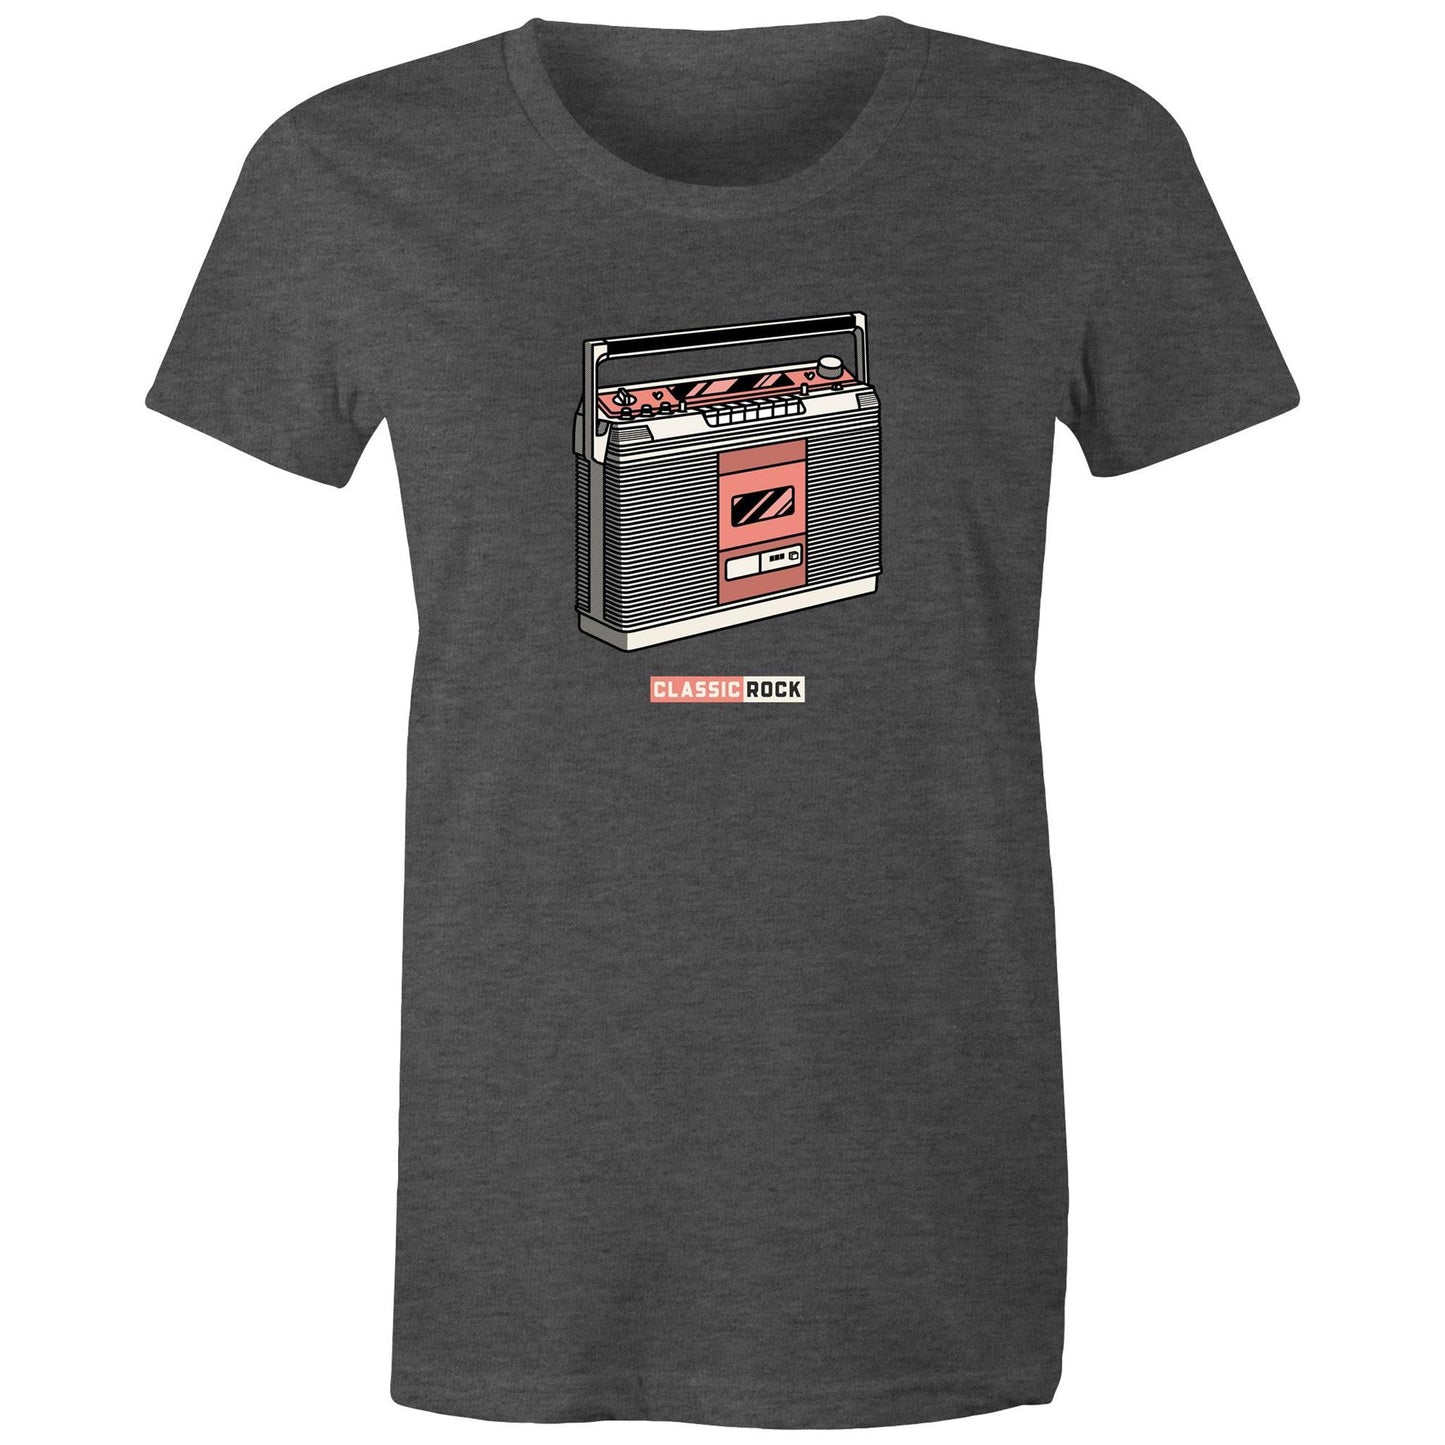 Classic Rock, Cassette Player - Womens T-shirt Asphalt Marle Womens T-shirt Music Retro